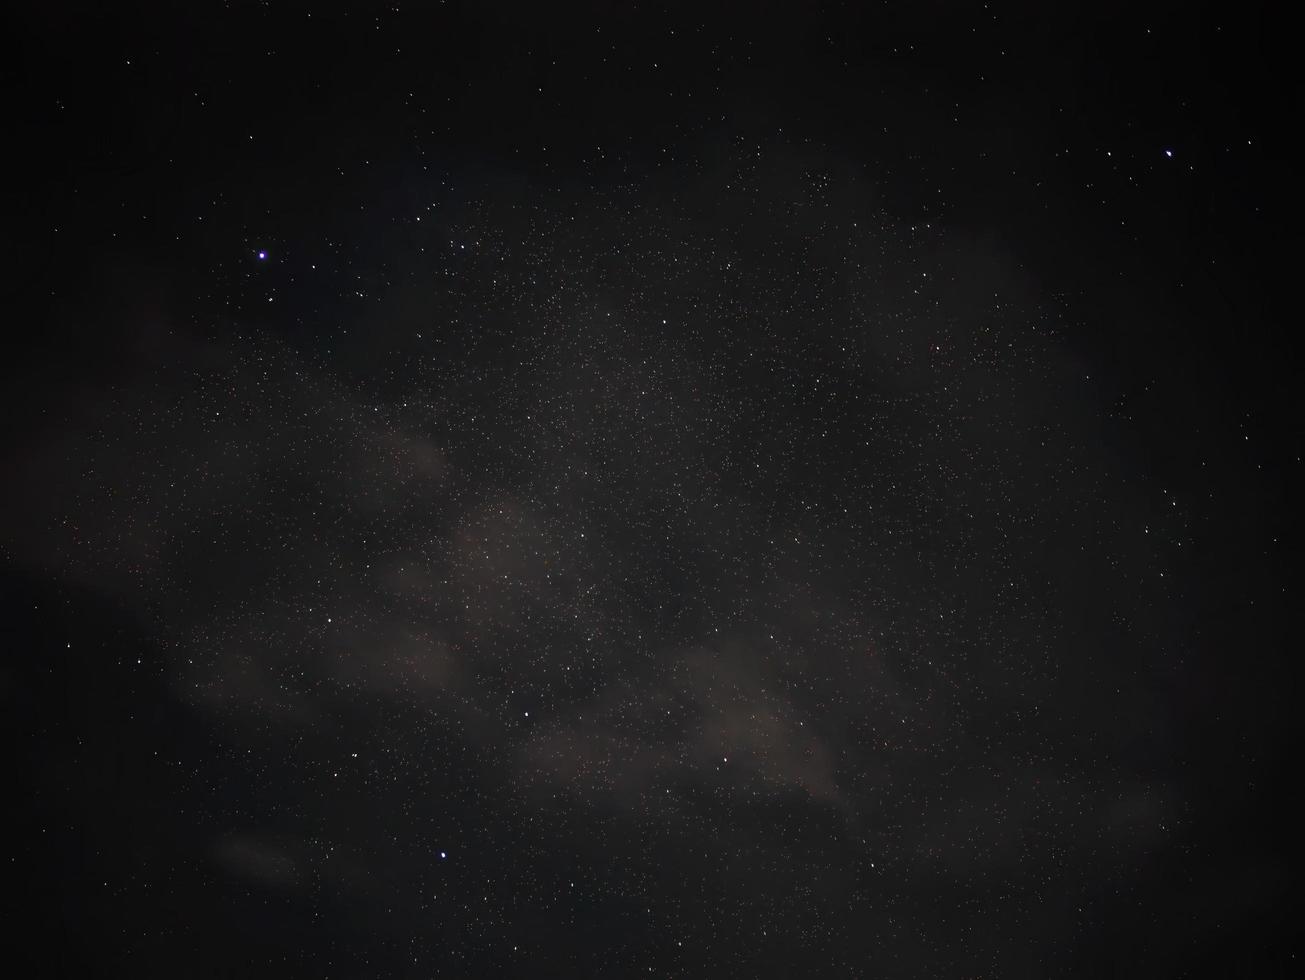 vista de ángulo bajo del cielo estrellado nocturno y polvo espacial en el universo, cosmos, fondo oscuro, toma nocturna de la constelación foto